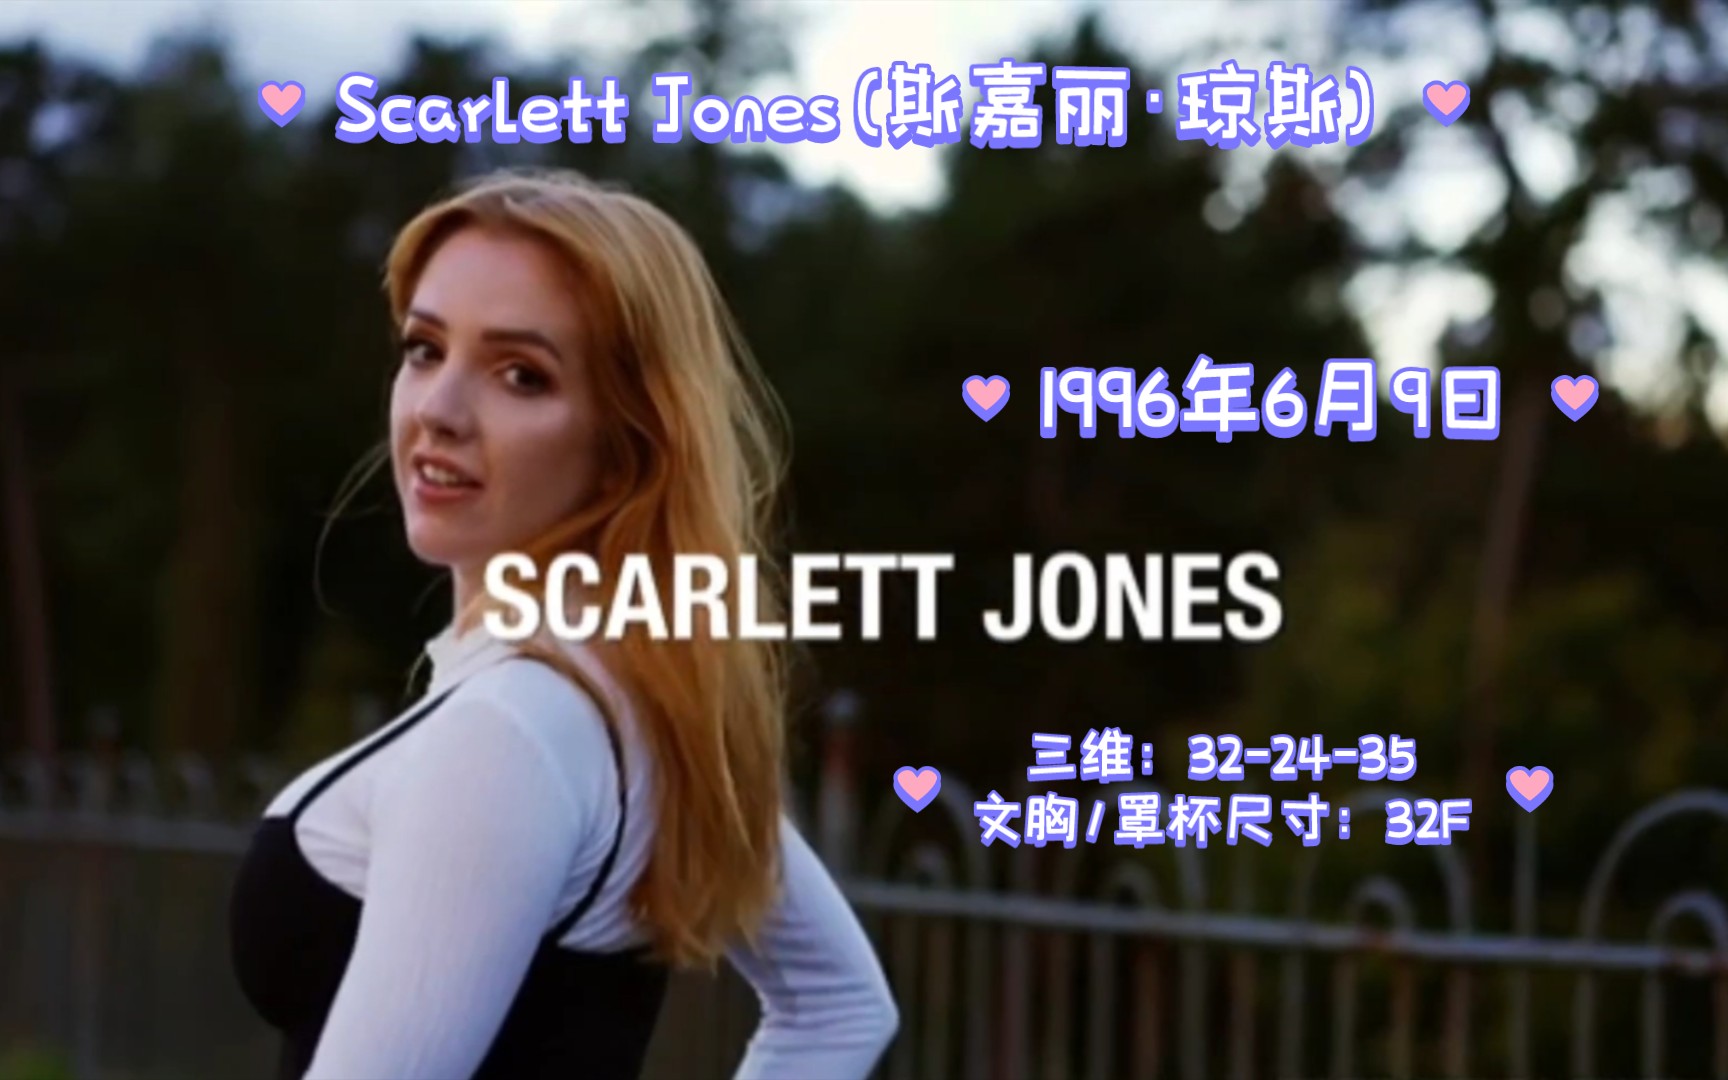 来自英国的Scarlett Jones(斯嘉丽·琼斯)老师